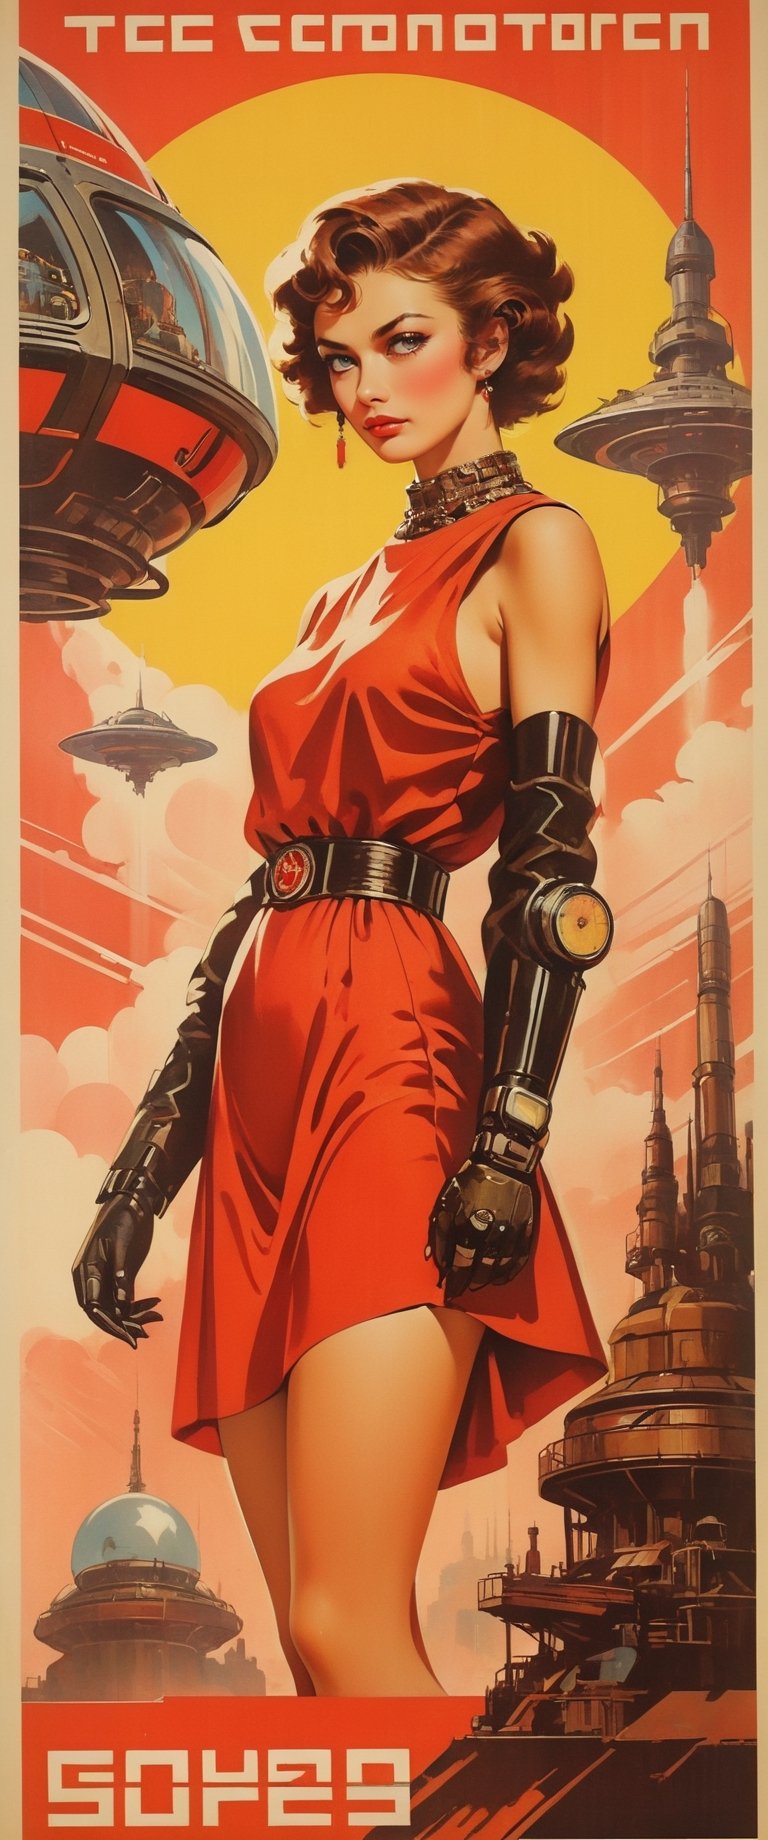 soviet poster, soviet cyberpunk, steampunk, sovietpunk, retrofuturistic,OlgaKostyantynivnaKurylenko